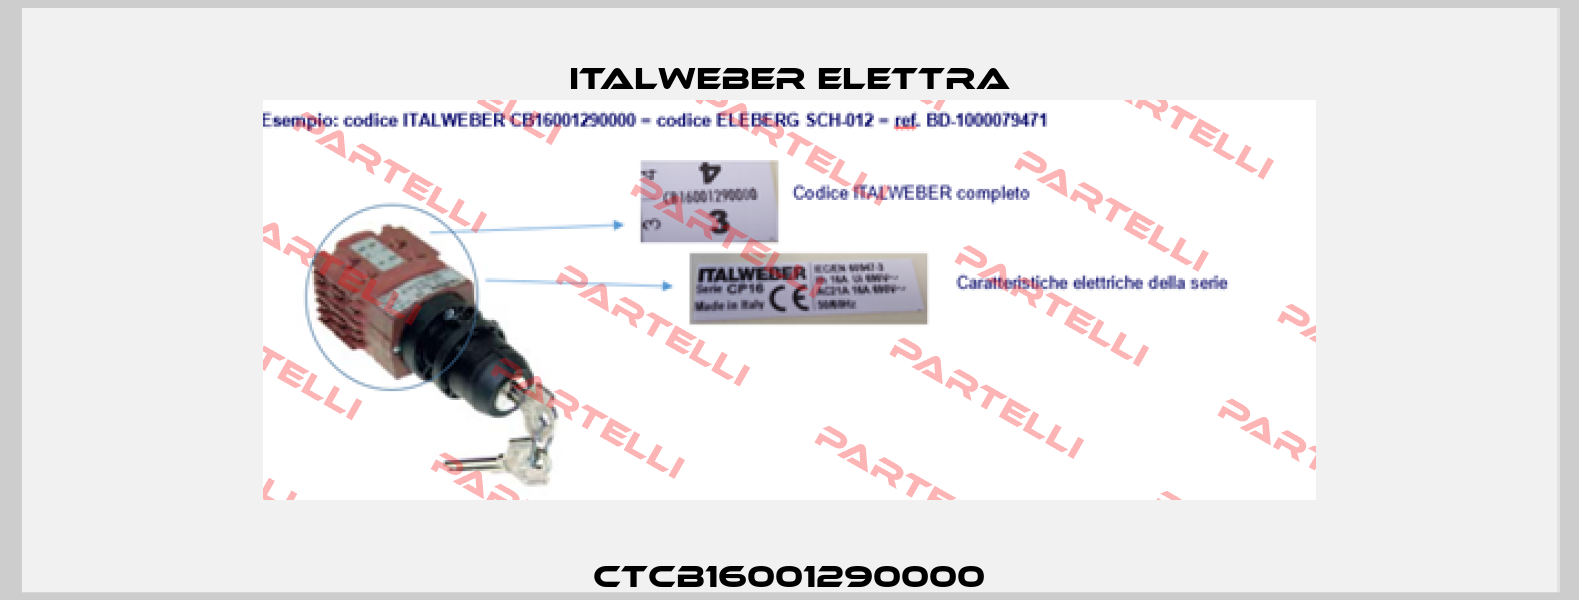 CTCB16001290000 Italweber Elettra